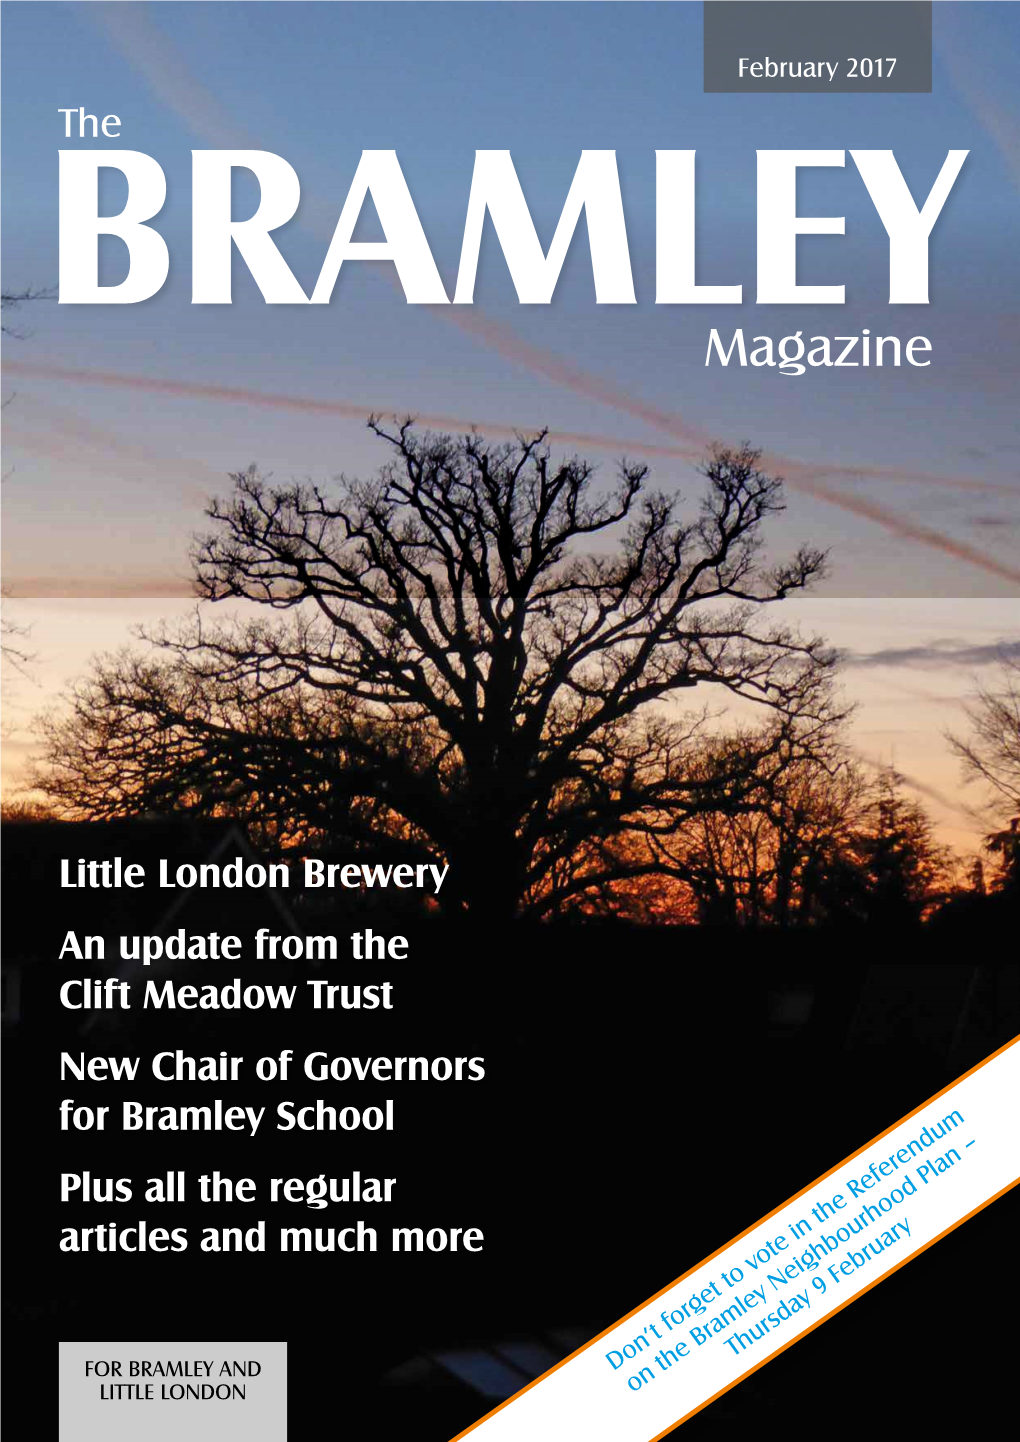 The BRAMLEY Magazine